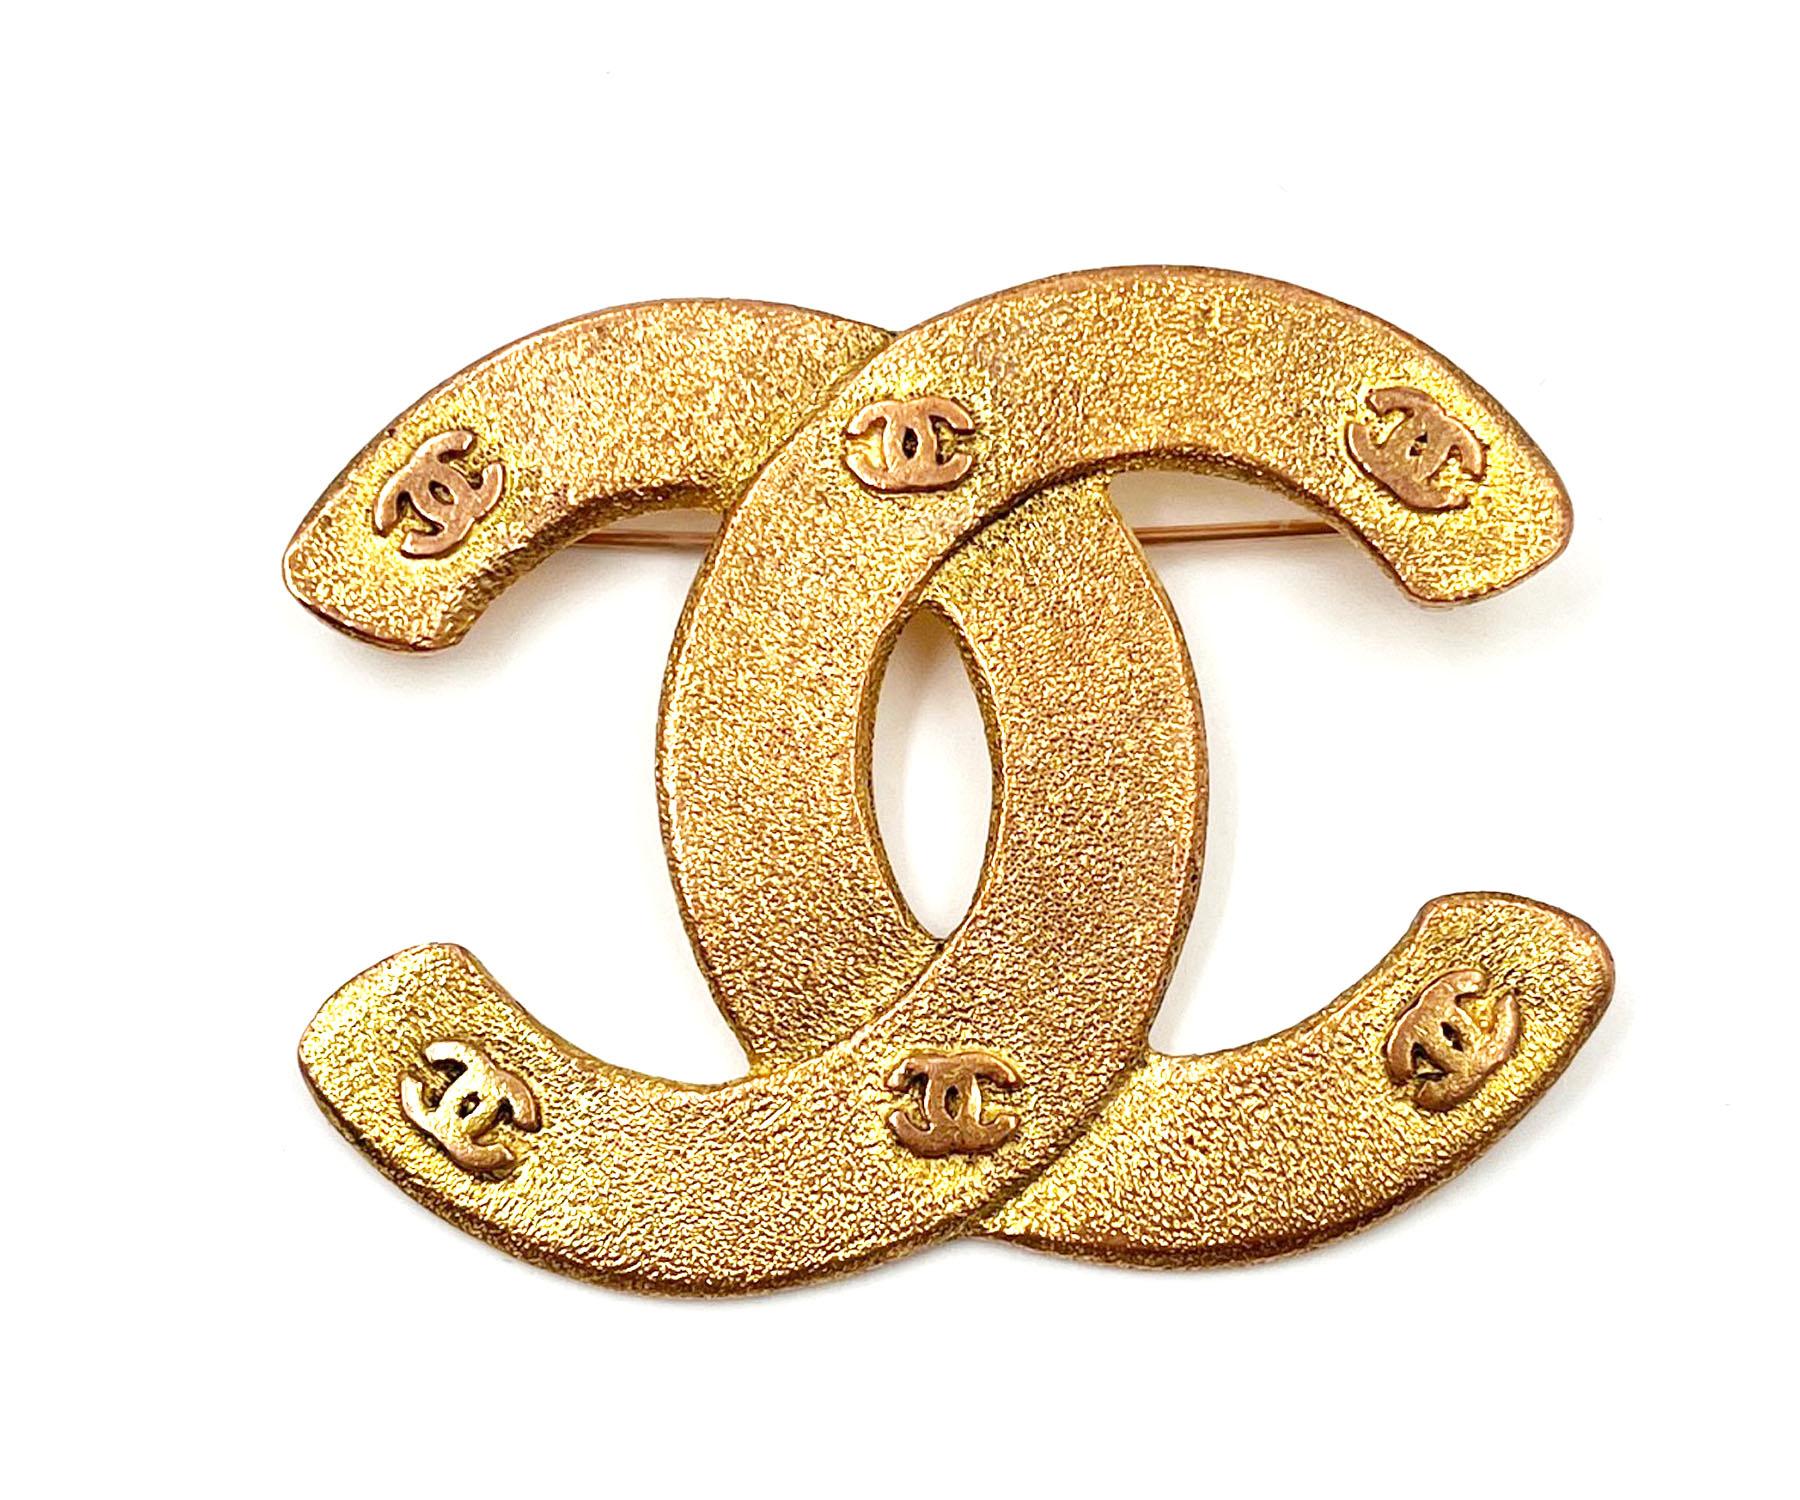 Chanel Vintage Vergoldete Matte CC Mini CC Große Brosche, Vintage

* Markiert Saison 29 und 1263
* Hergestellt in Frankreich

-Es ist ungefähr 1,25